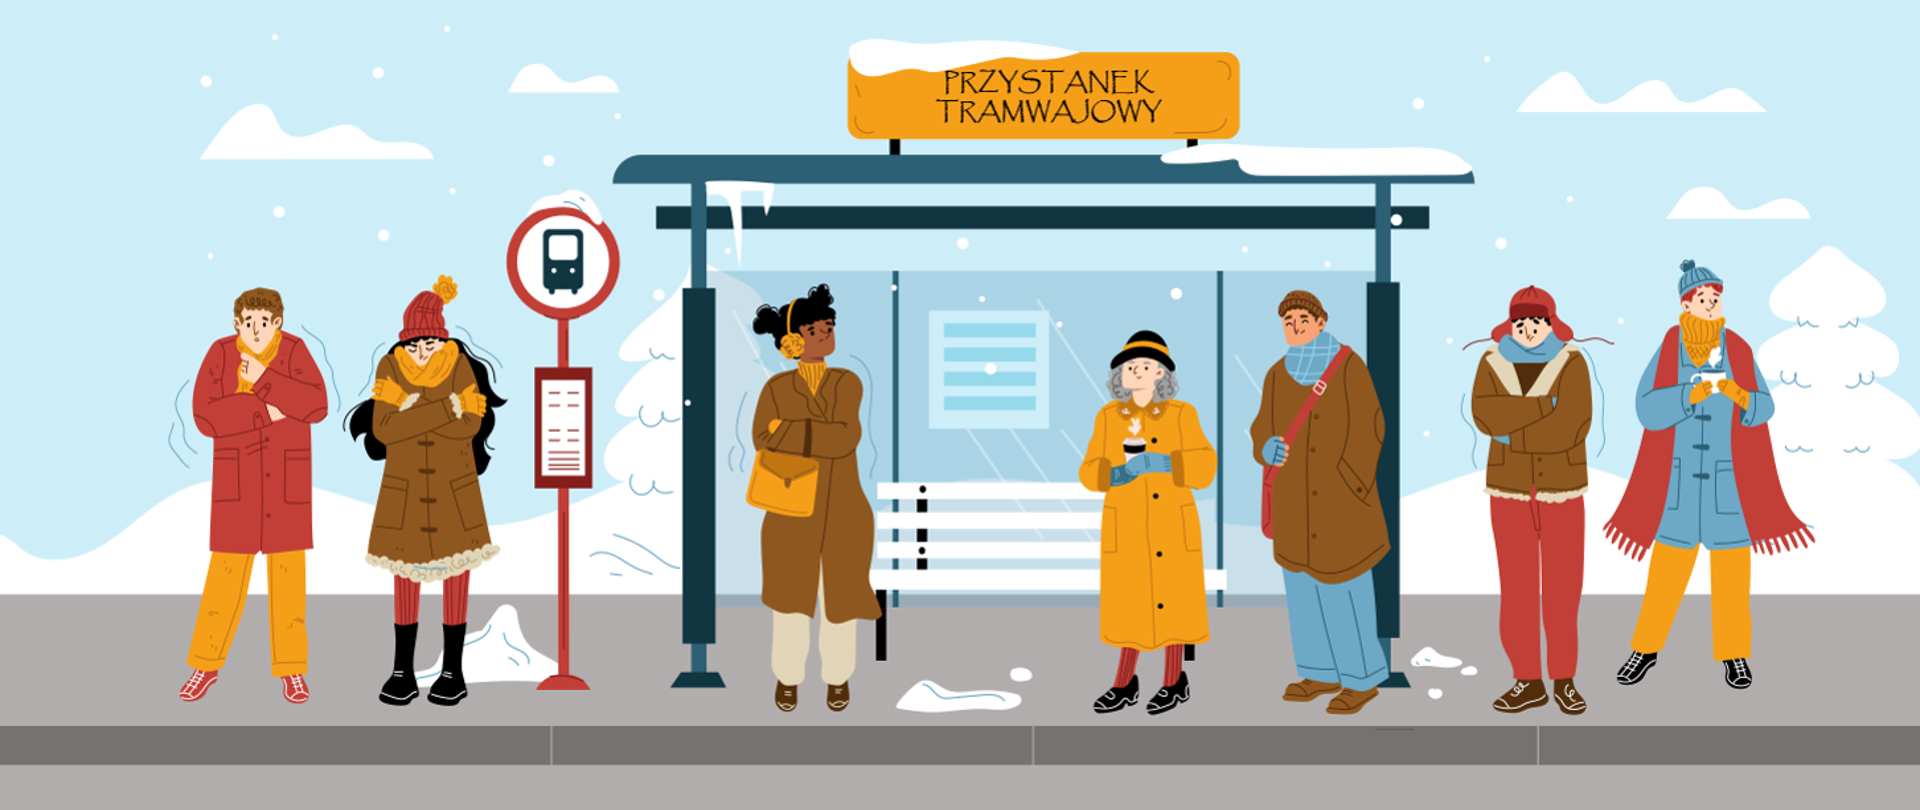 Grafika przestawiająca ludzi stojących na przystanku tramwajowym w czasie mrozu